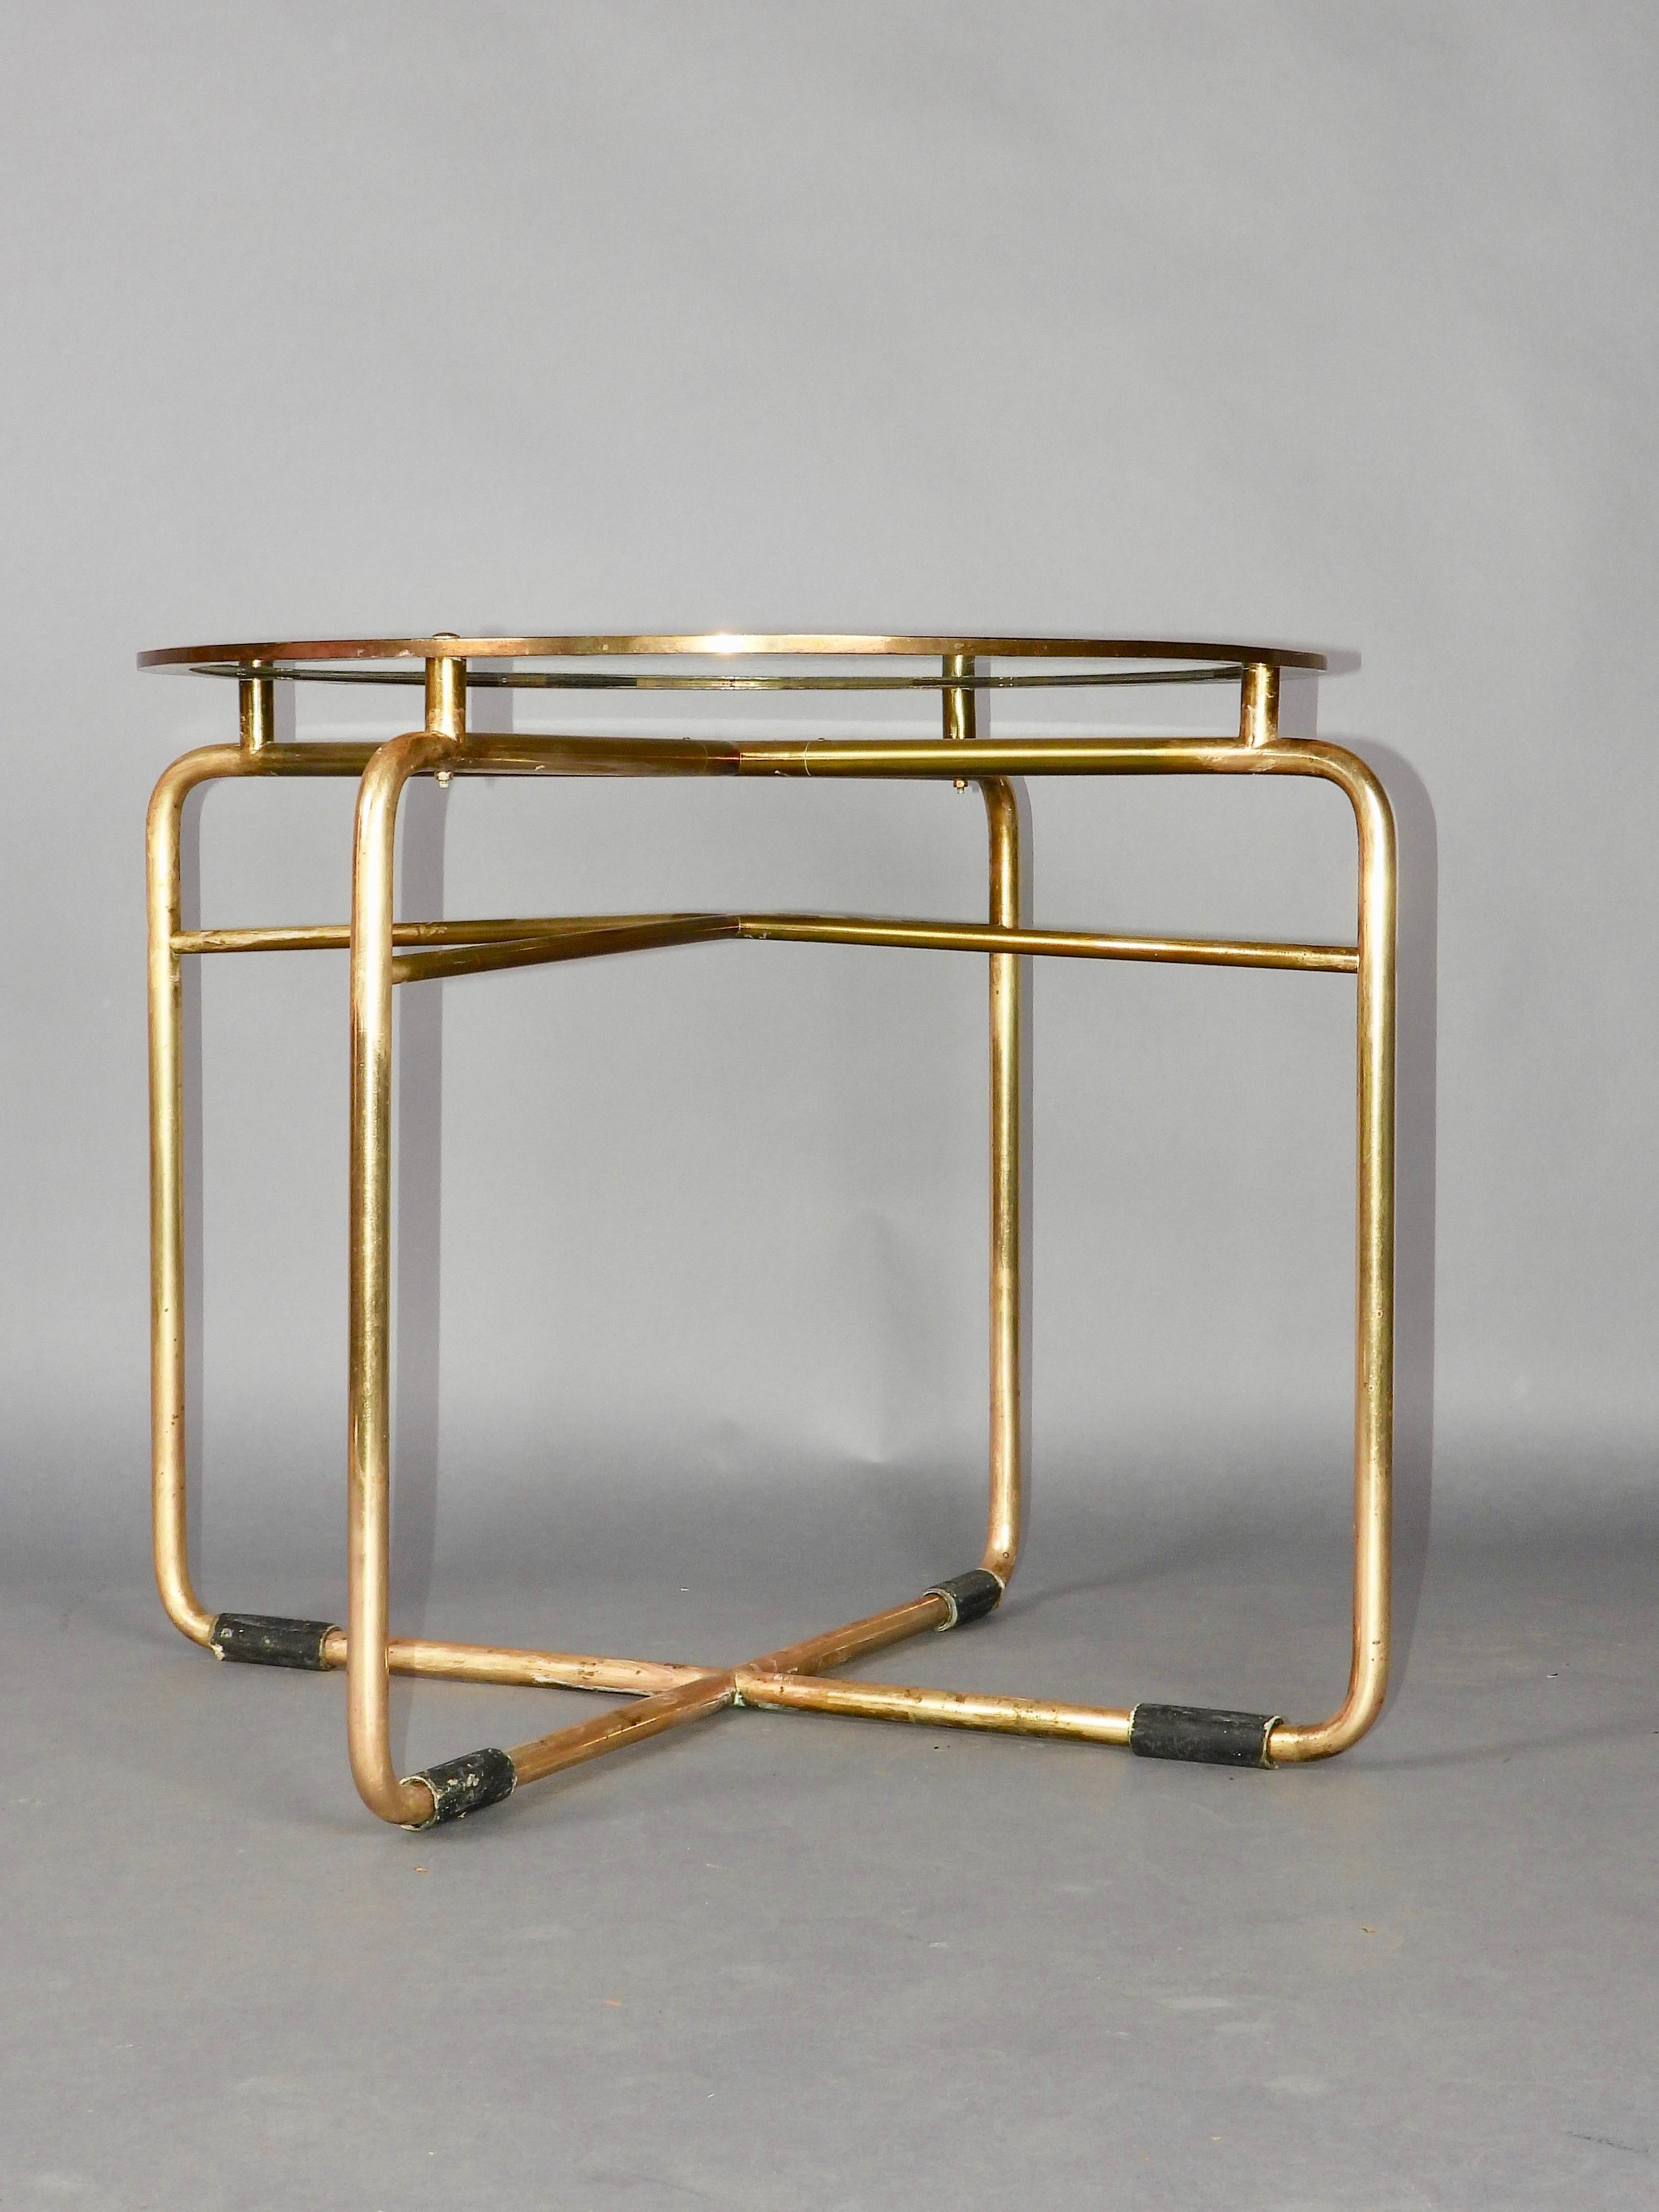 Metal tubular art deco pedestal table with golden patina